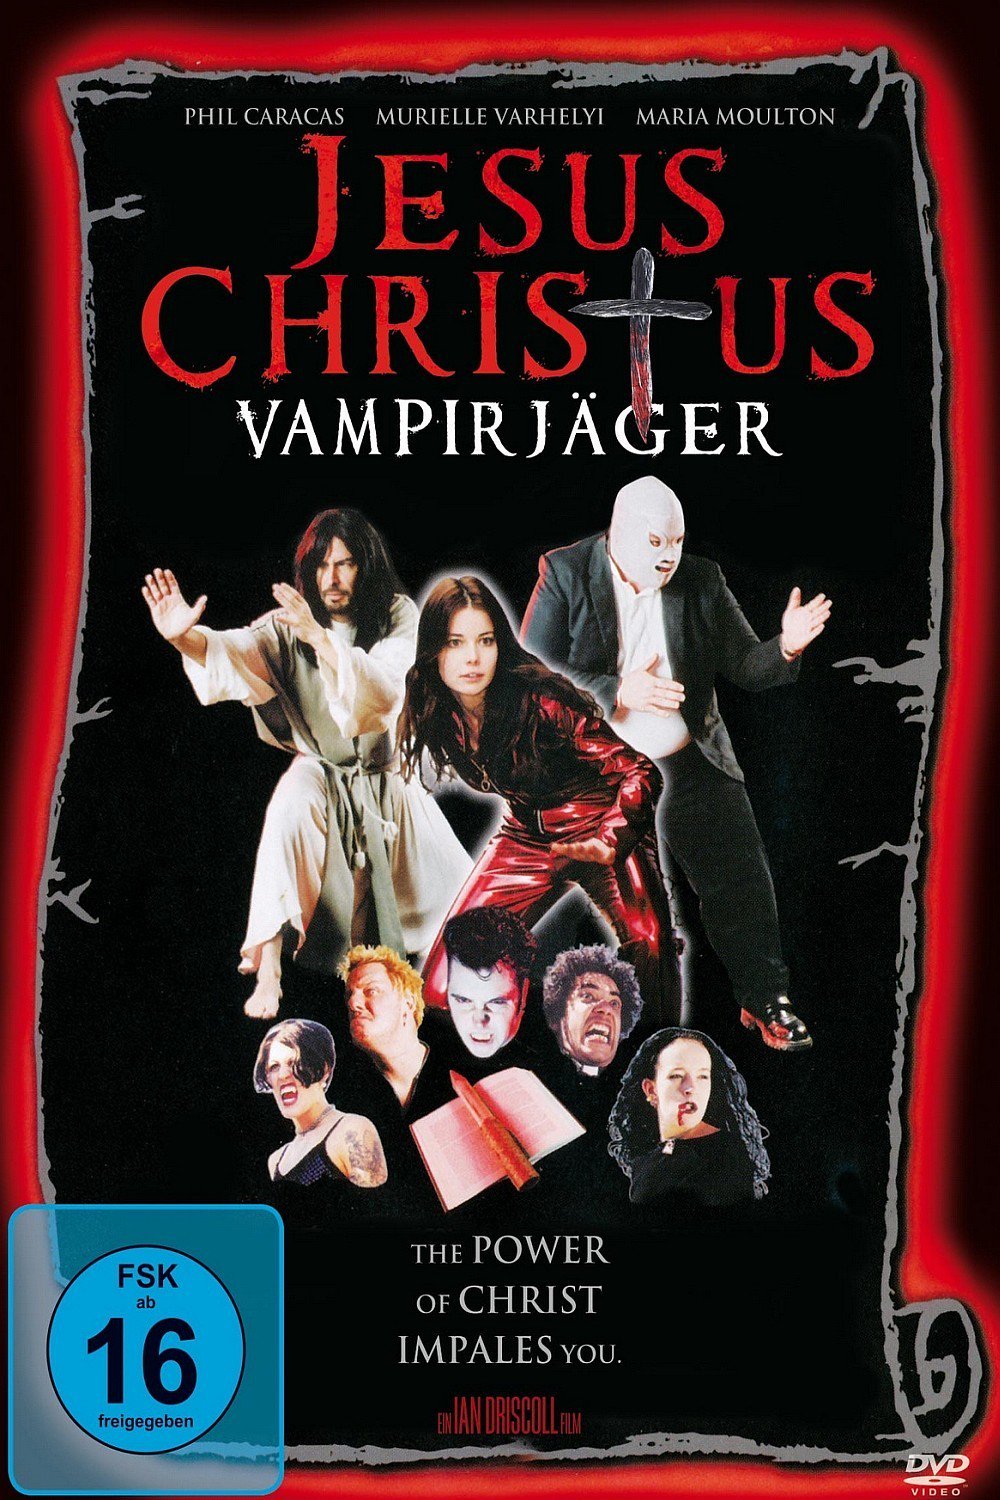 Plakat von "Jesus Christus Vampirjäger"